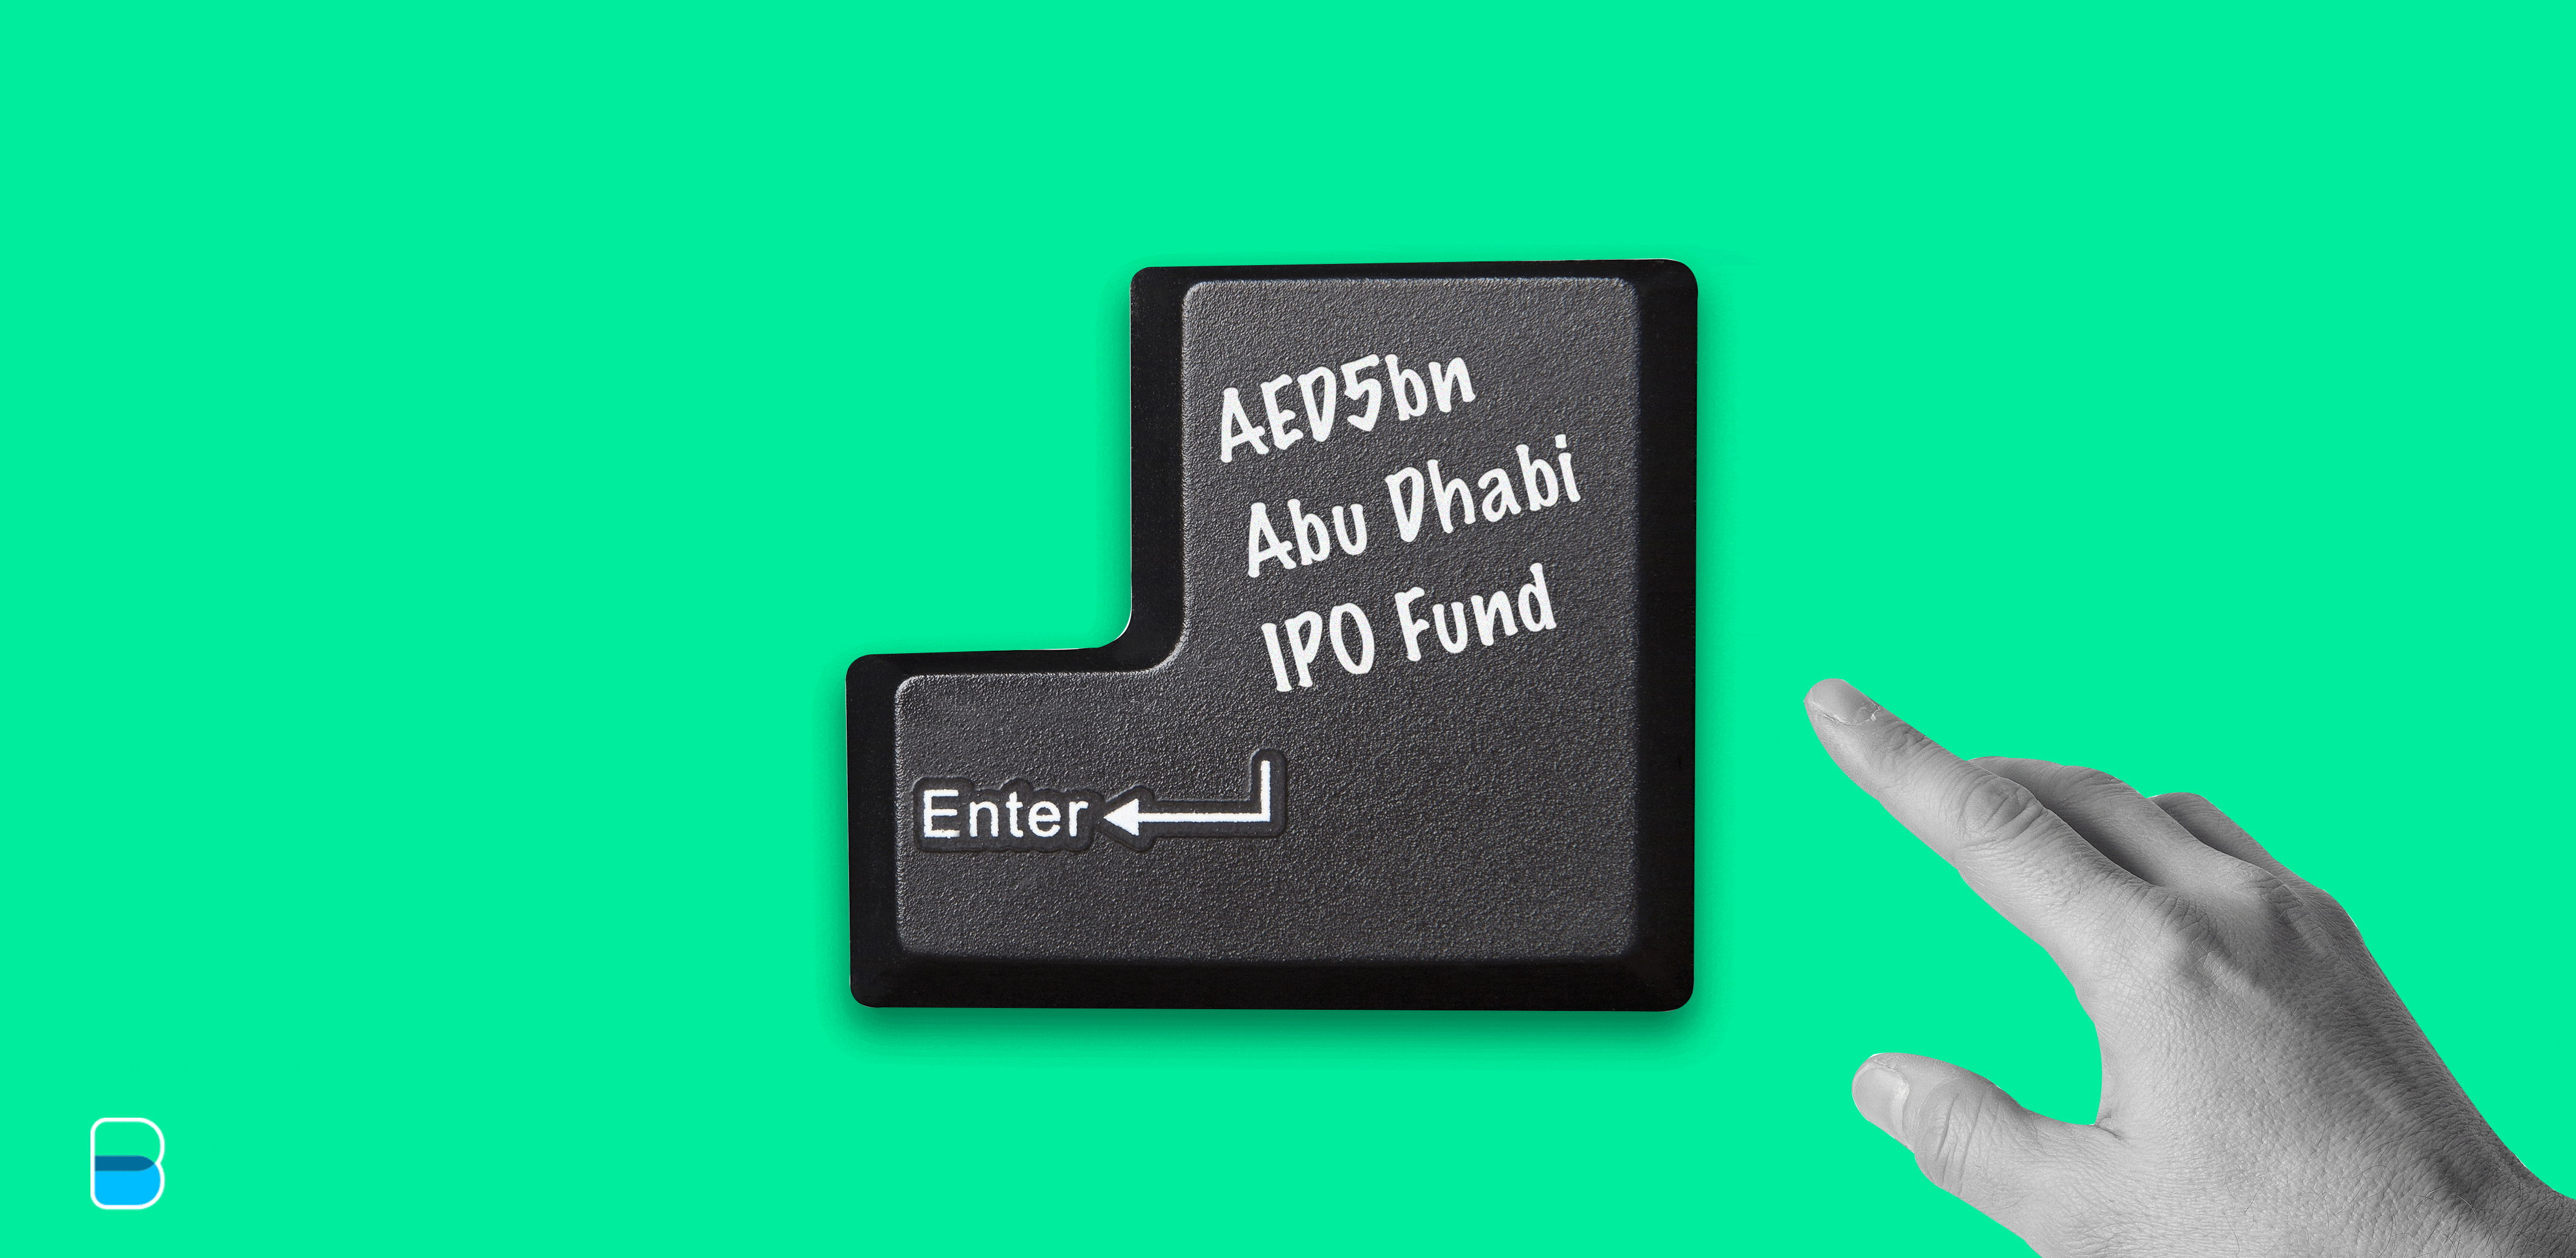 Enter, Abu Dhabi IPO Fund